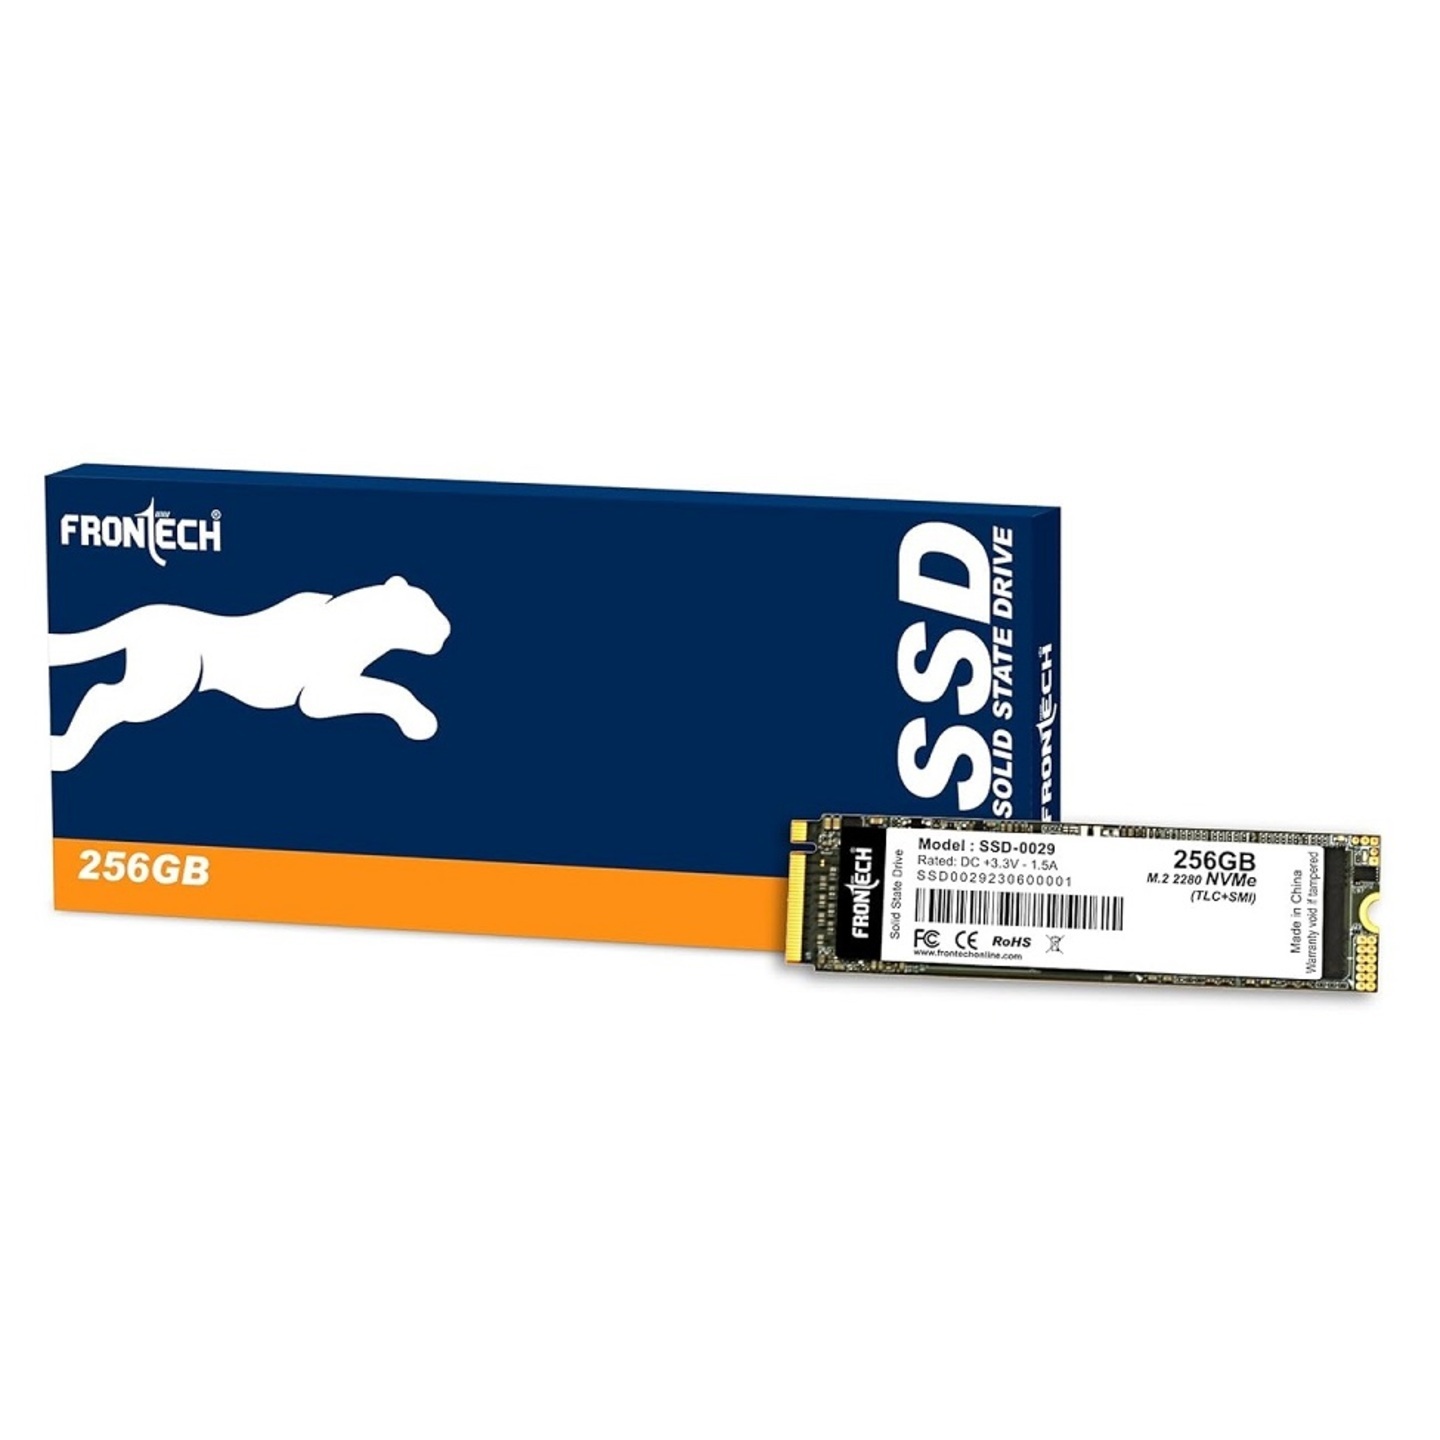 FRONTECH 256GB Internal SSD SSD-0029